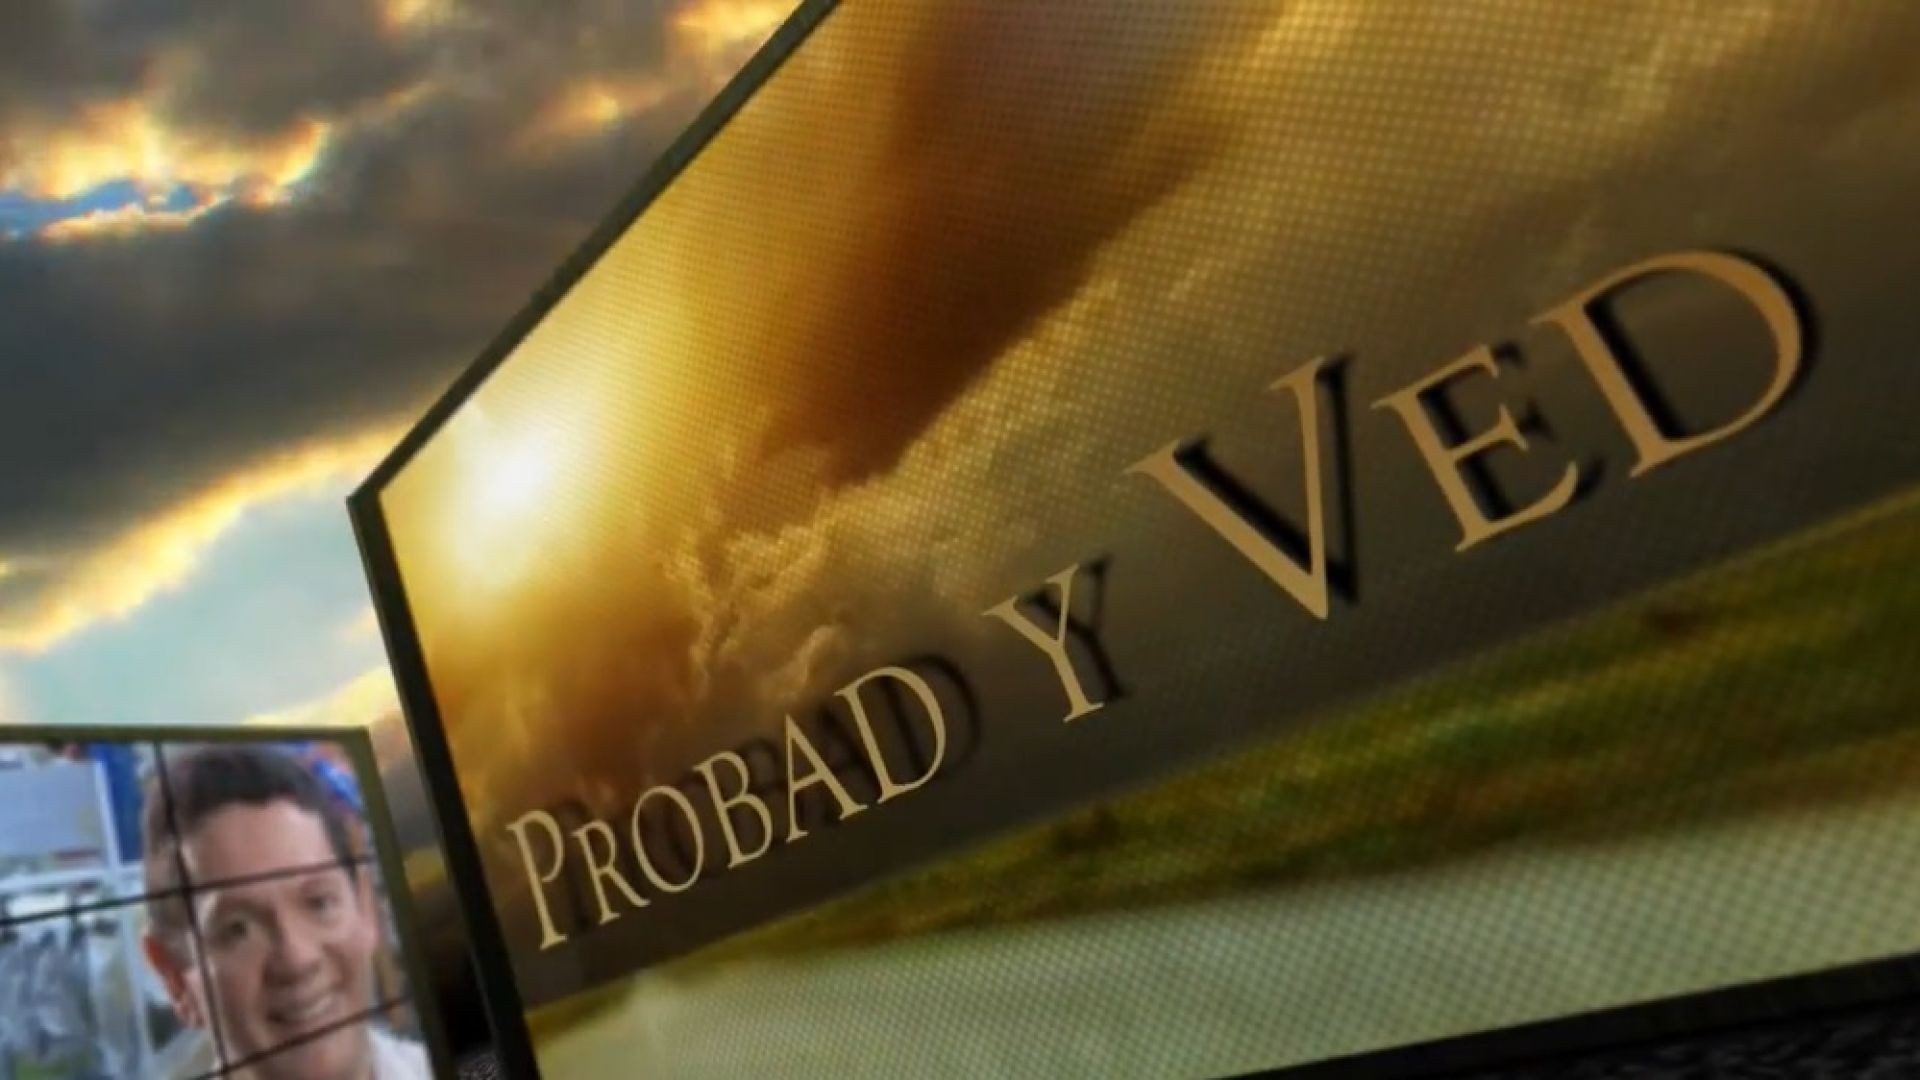 ⁣Probad y Ved 2013 - En el camino de Dios - 07/Dic